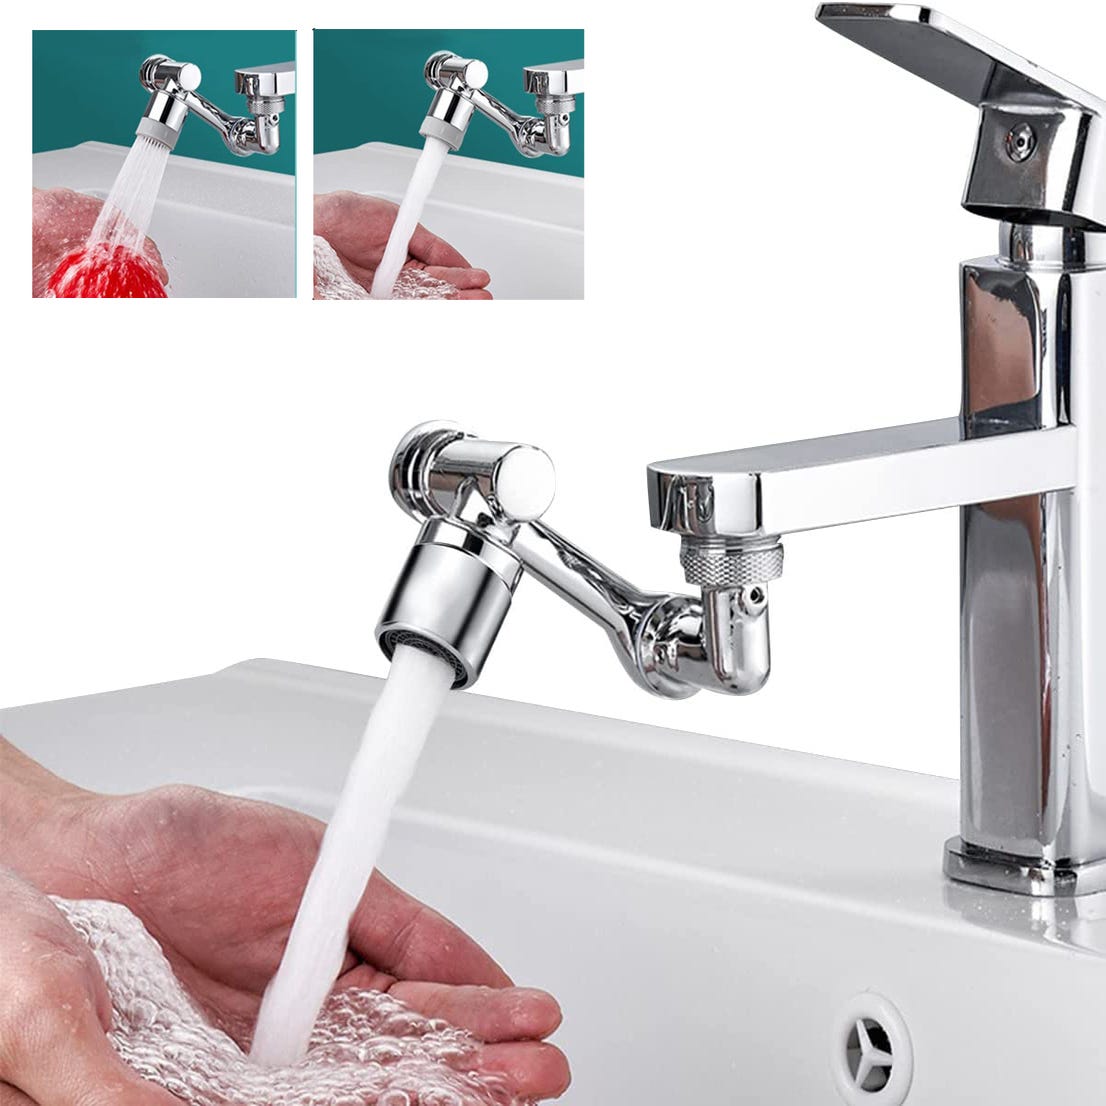 Rallonge de robinet universelle pivotante 1080°, fil extérieur  24mm/0.95inch, accessoire de lavage du visage avec 2 sorties d'eau